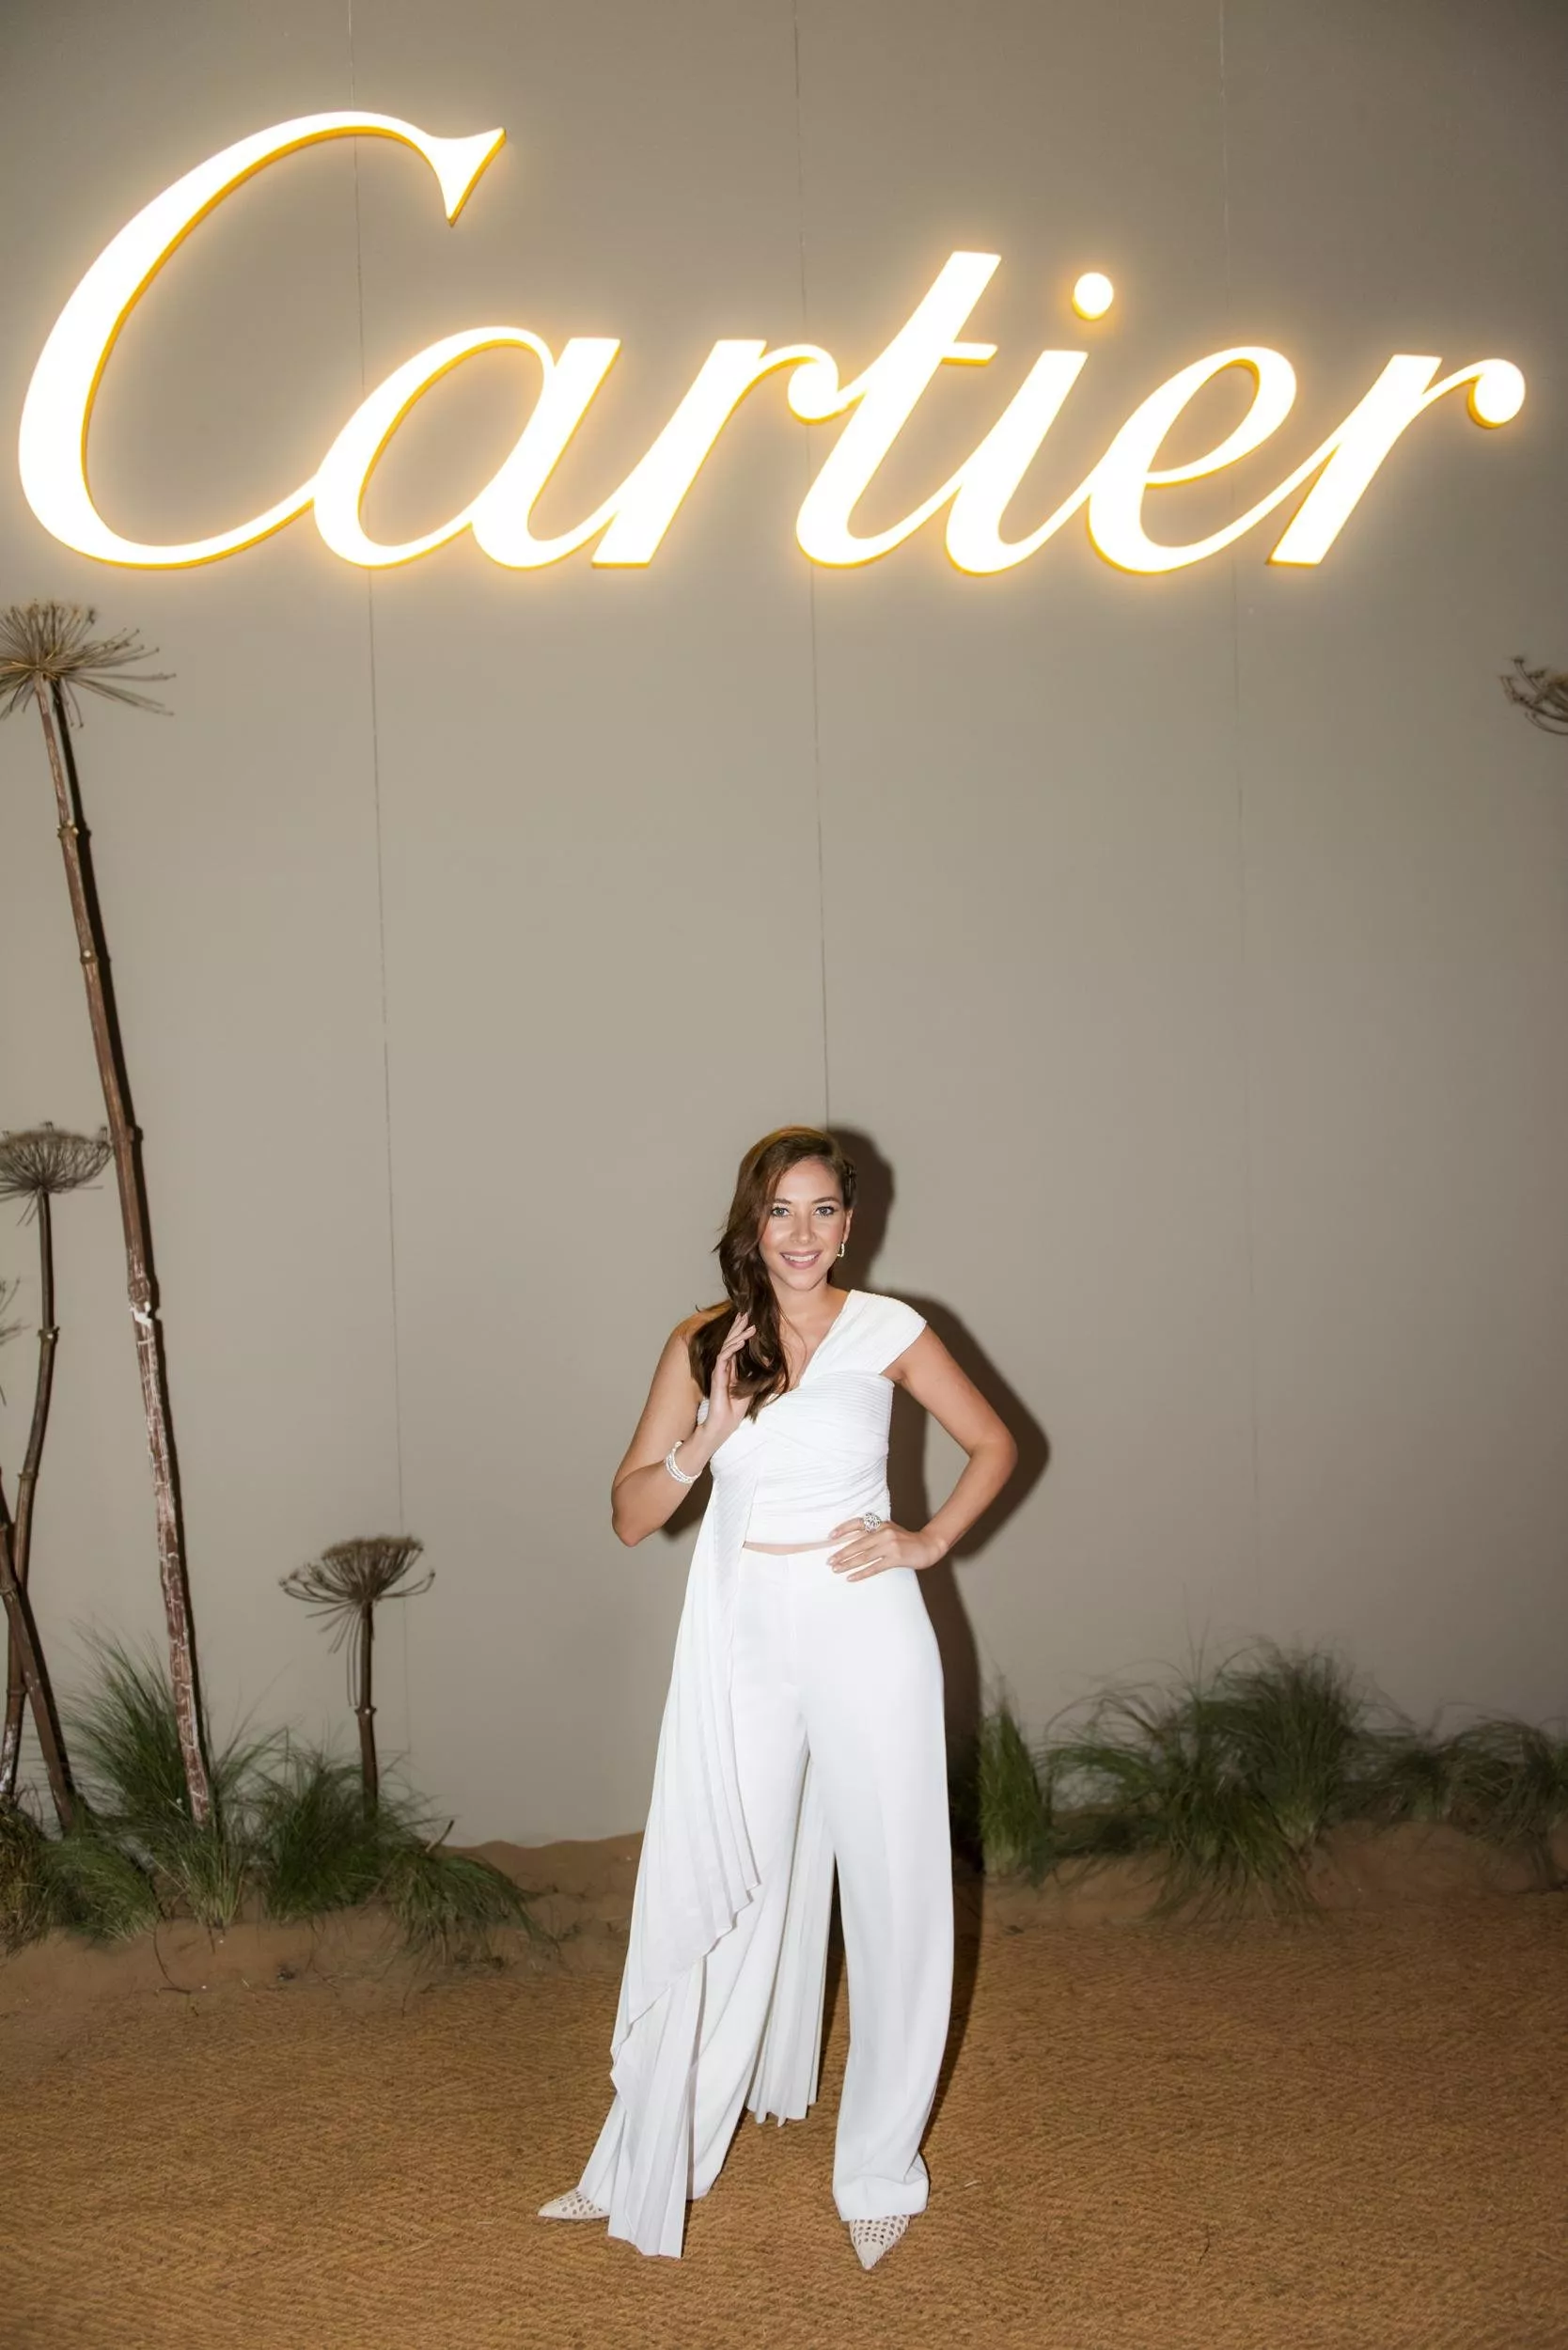 دار Cartier تُقيم أمسية خاصة بحضور مشاهير عالميين في مخيم سونارا الصحراوي في دبي